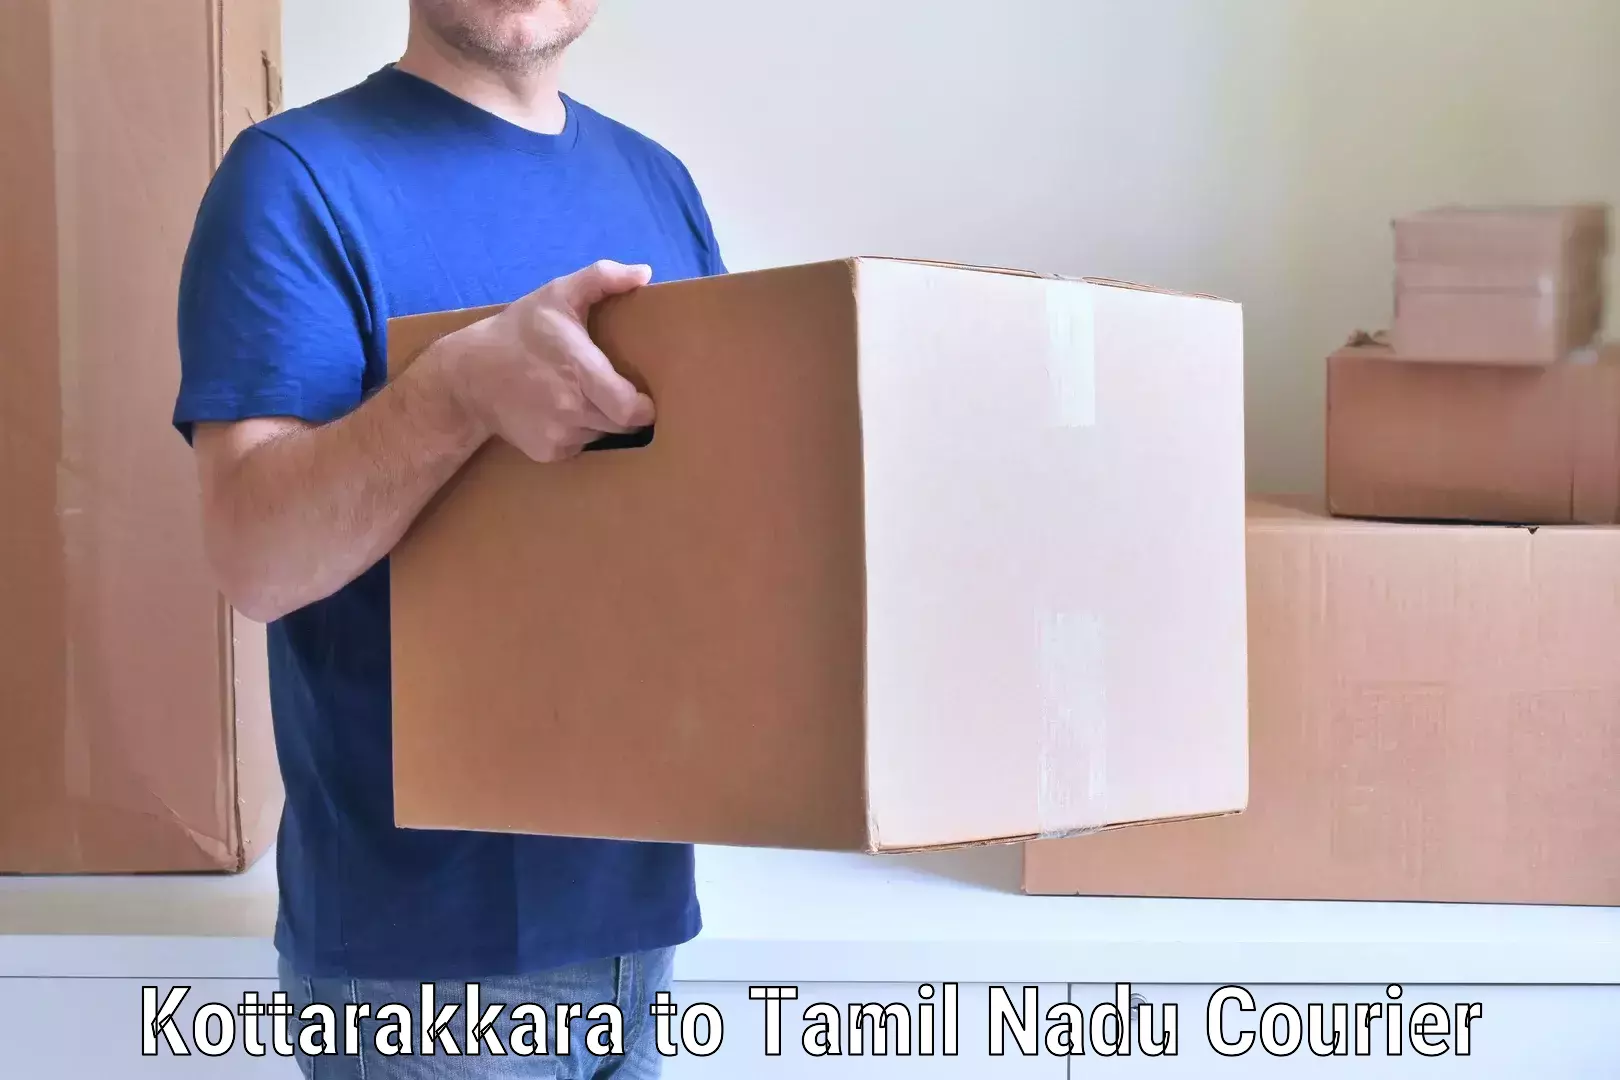 Household goods transport Kottarakkara to Natham